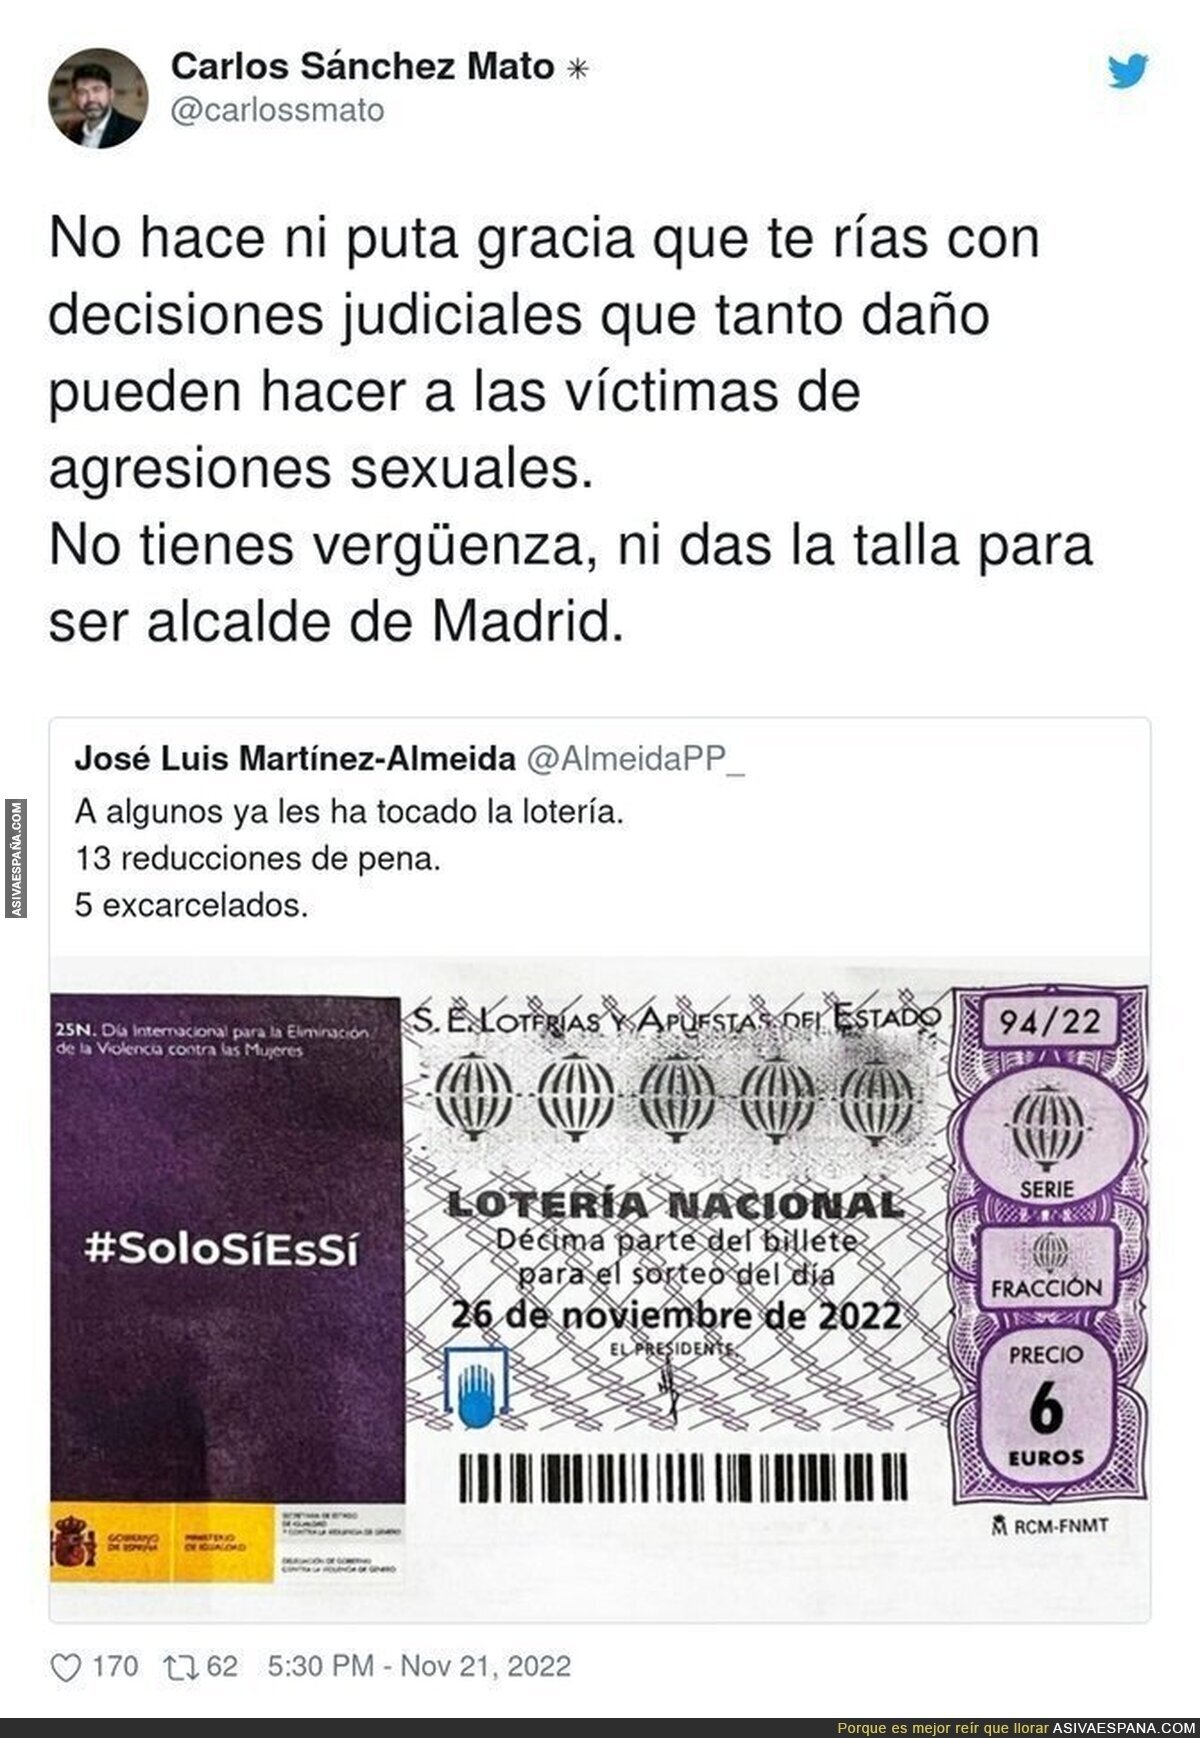 El alcalde de Madrid hace humor cuando no debe